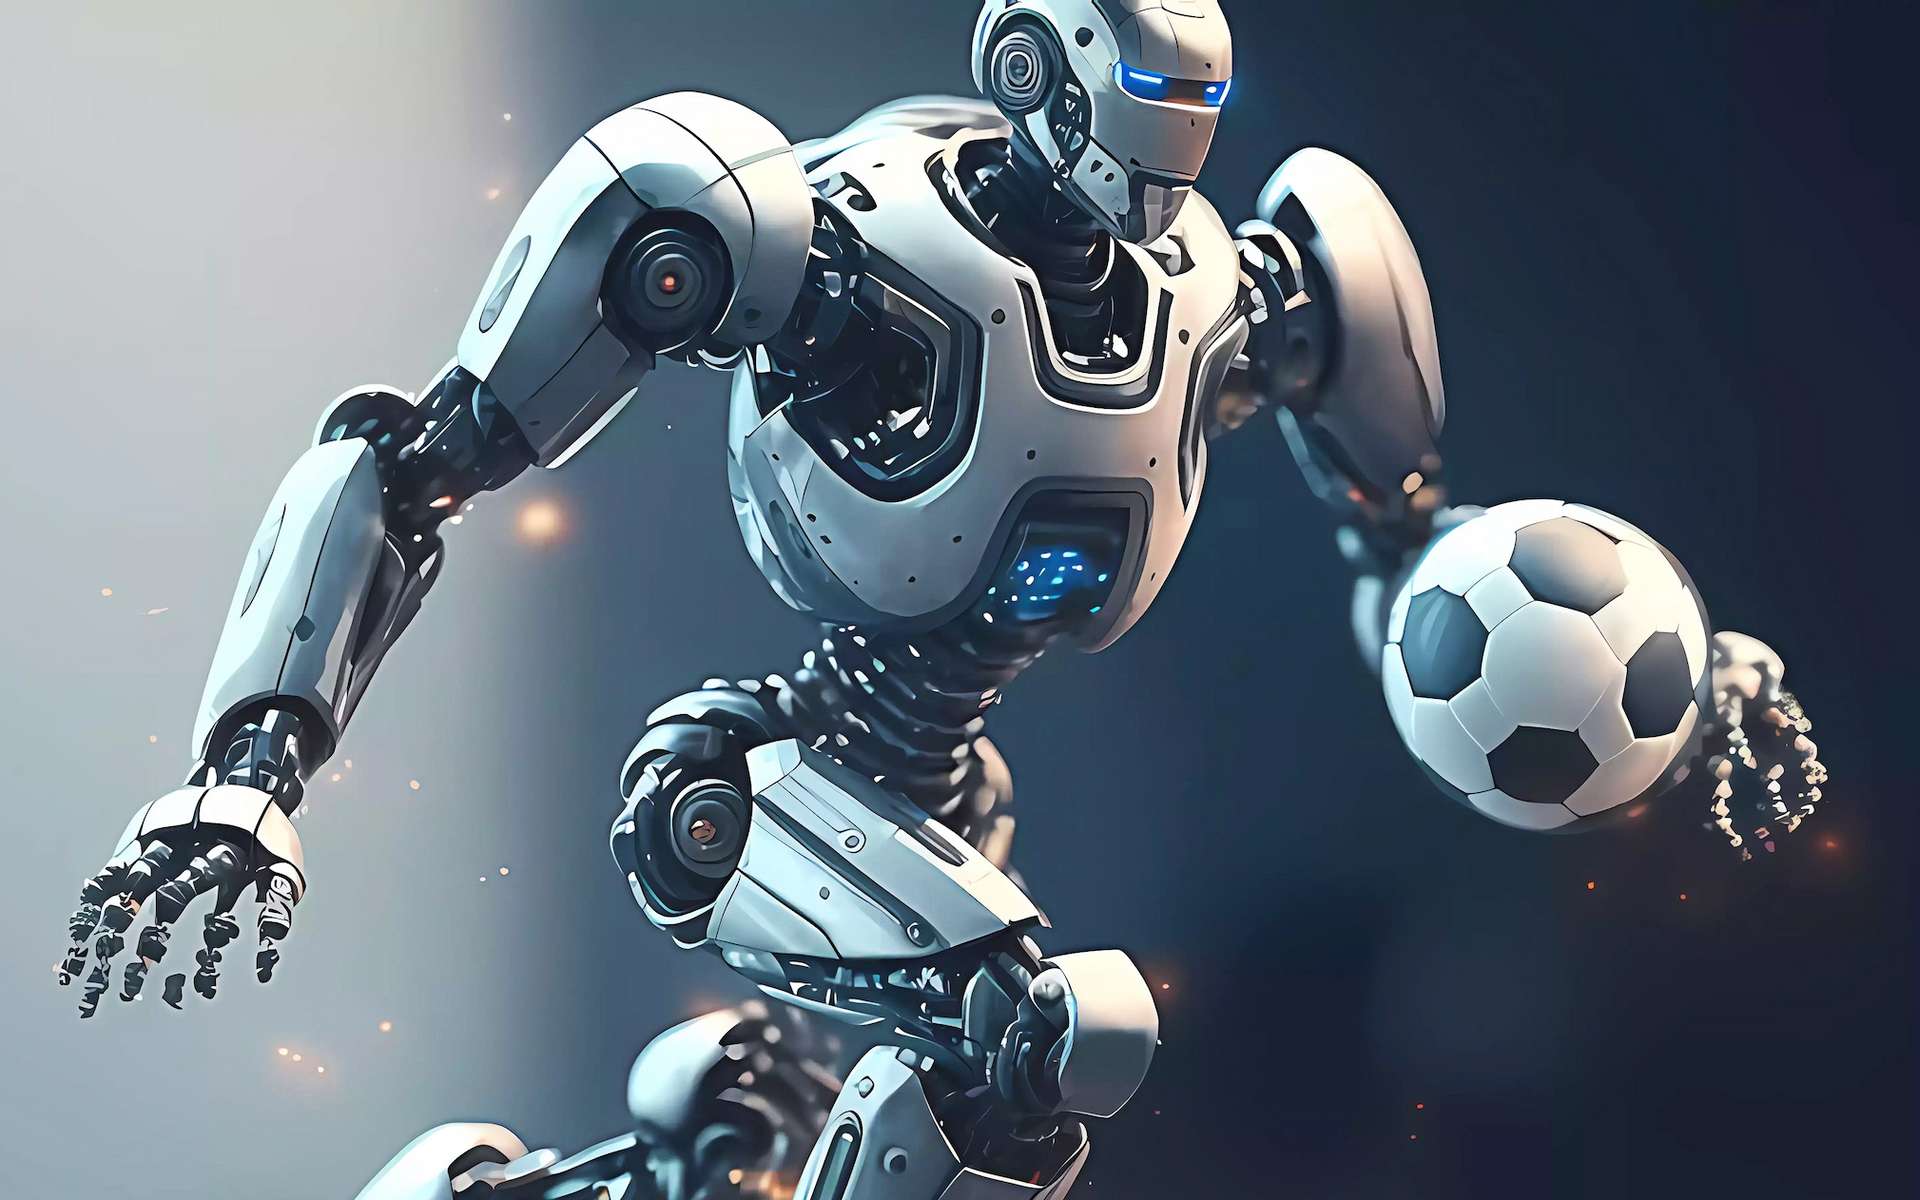 Ces robots humanoïdes font des prouesses au football : ils dribblent et tirent comme des humains !